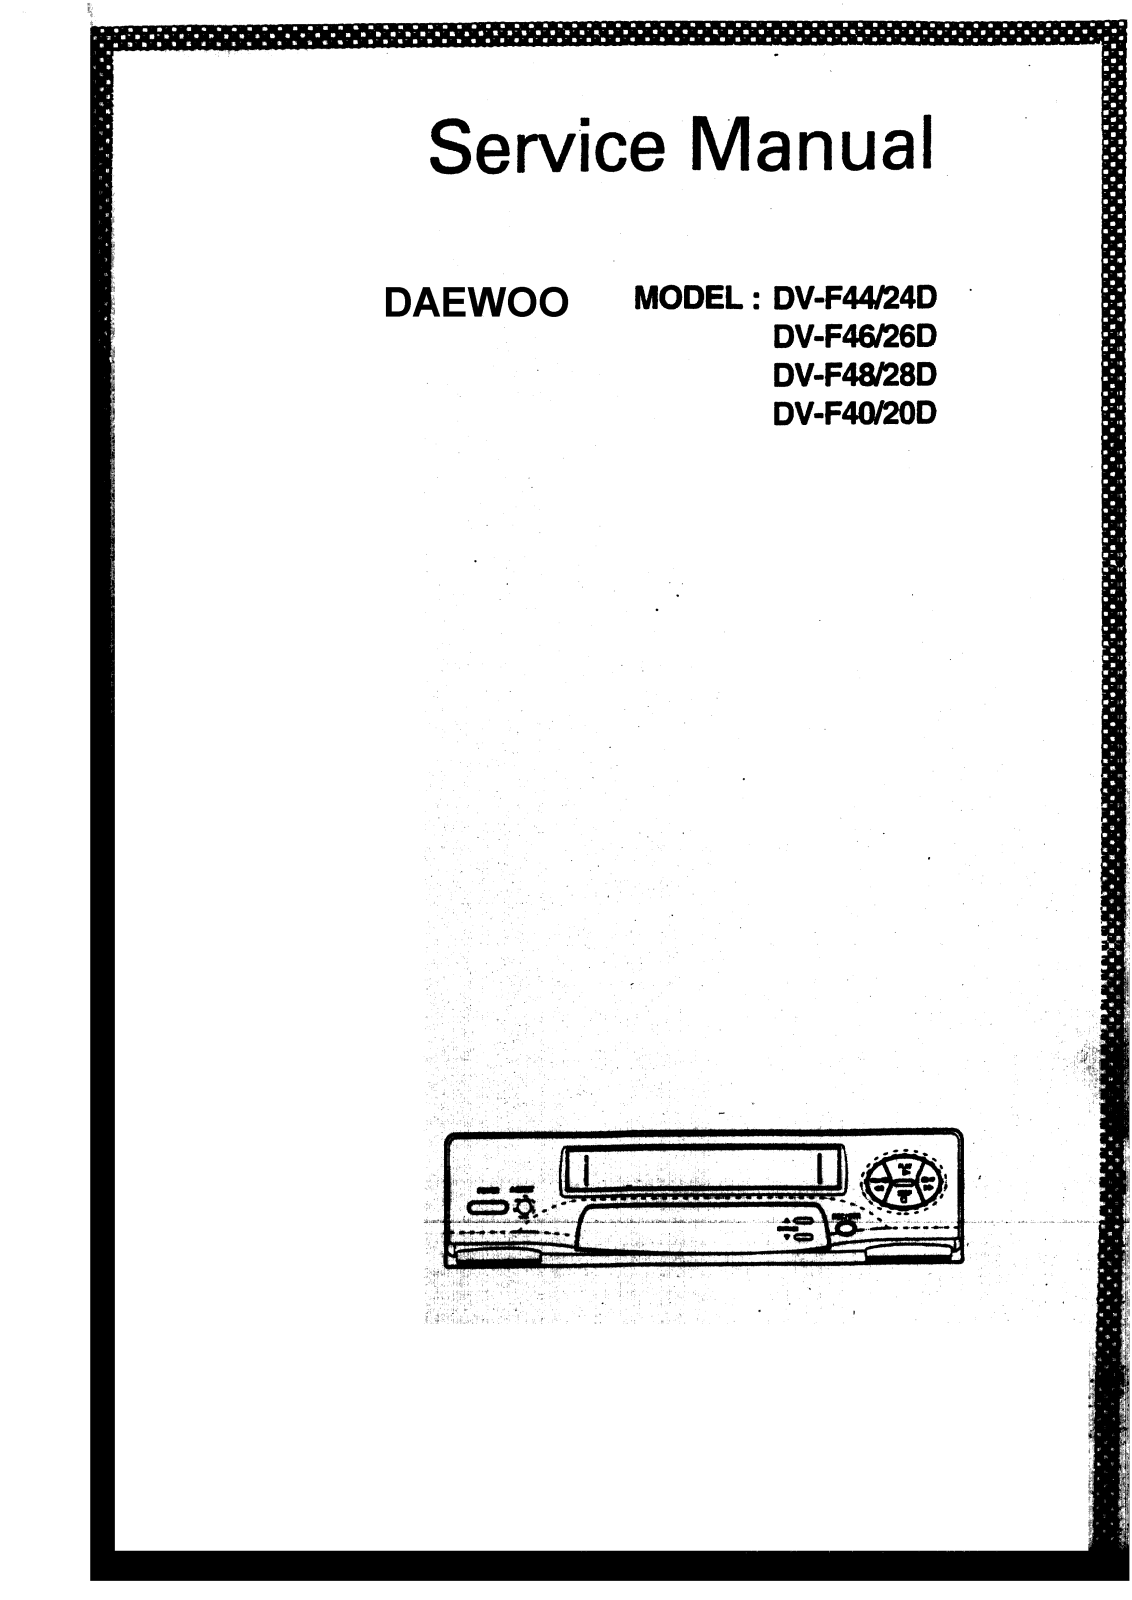 Daewoo DV-F20D, DV-F40, DV-F28D, DV-F48, DV-F26D Service Manual